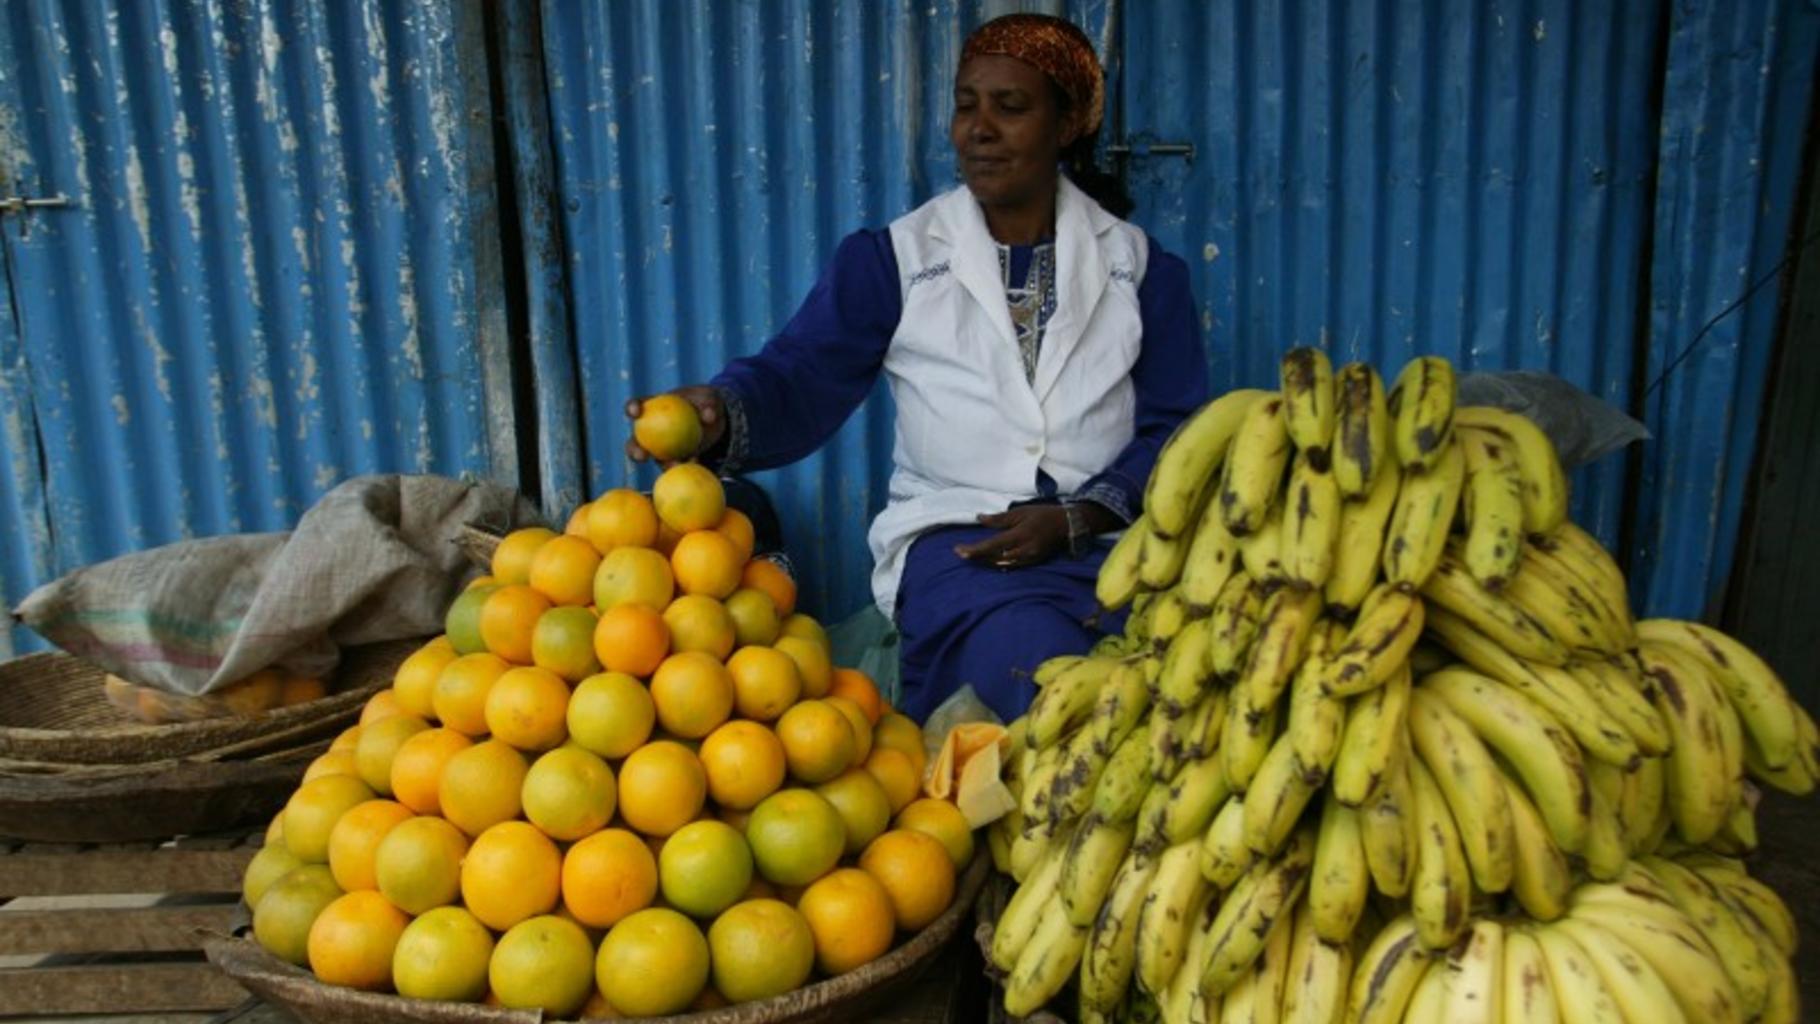 Eine Frau verkauft Bananen und Orangen auf einem Markt in Äthiopien